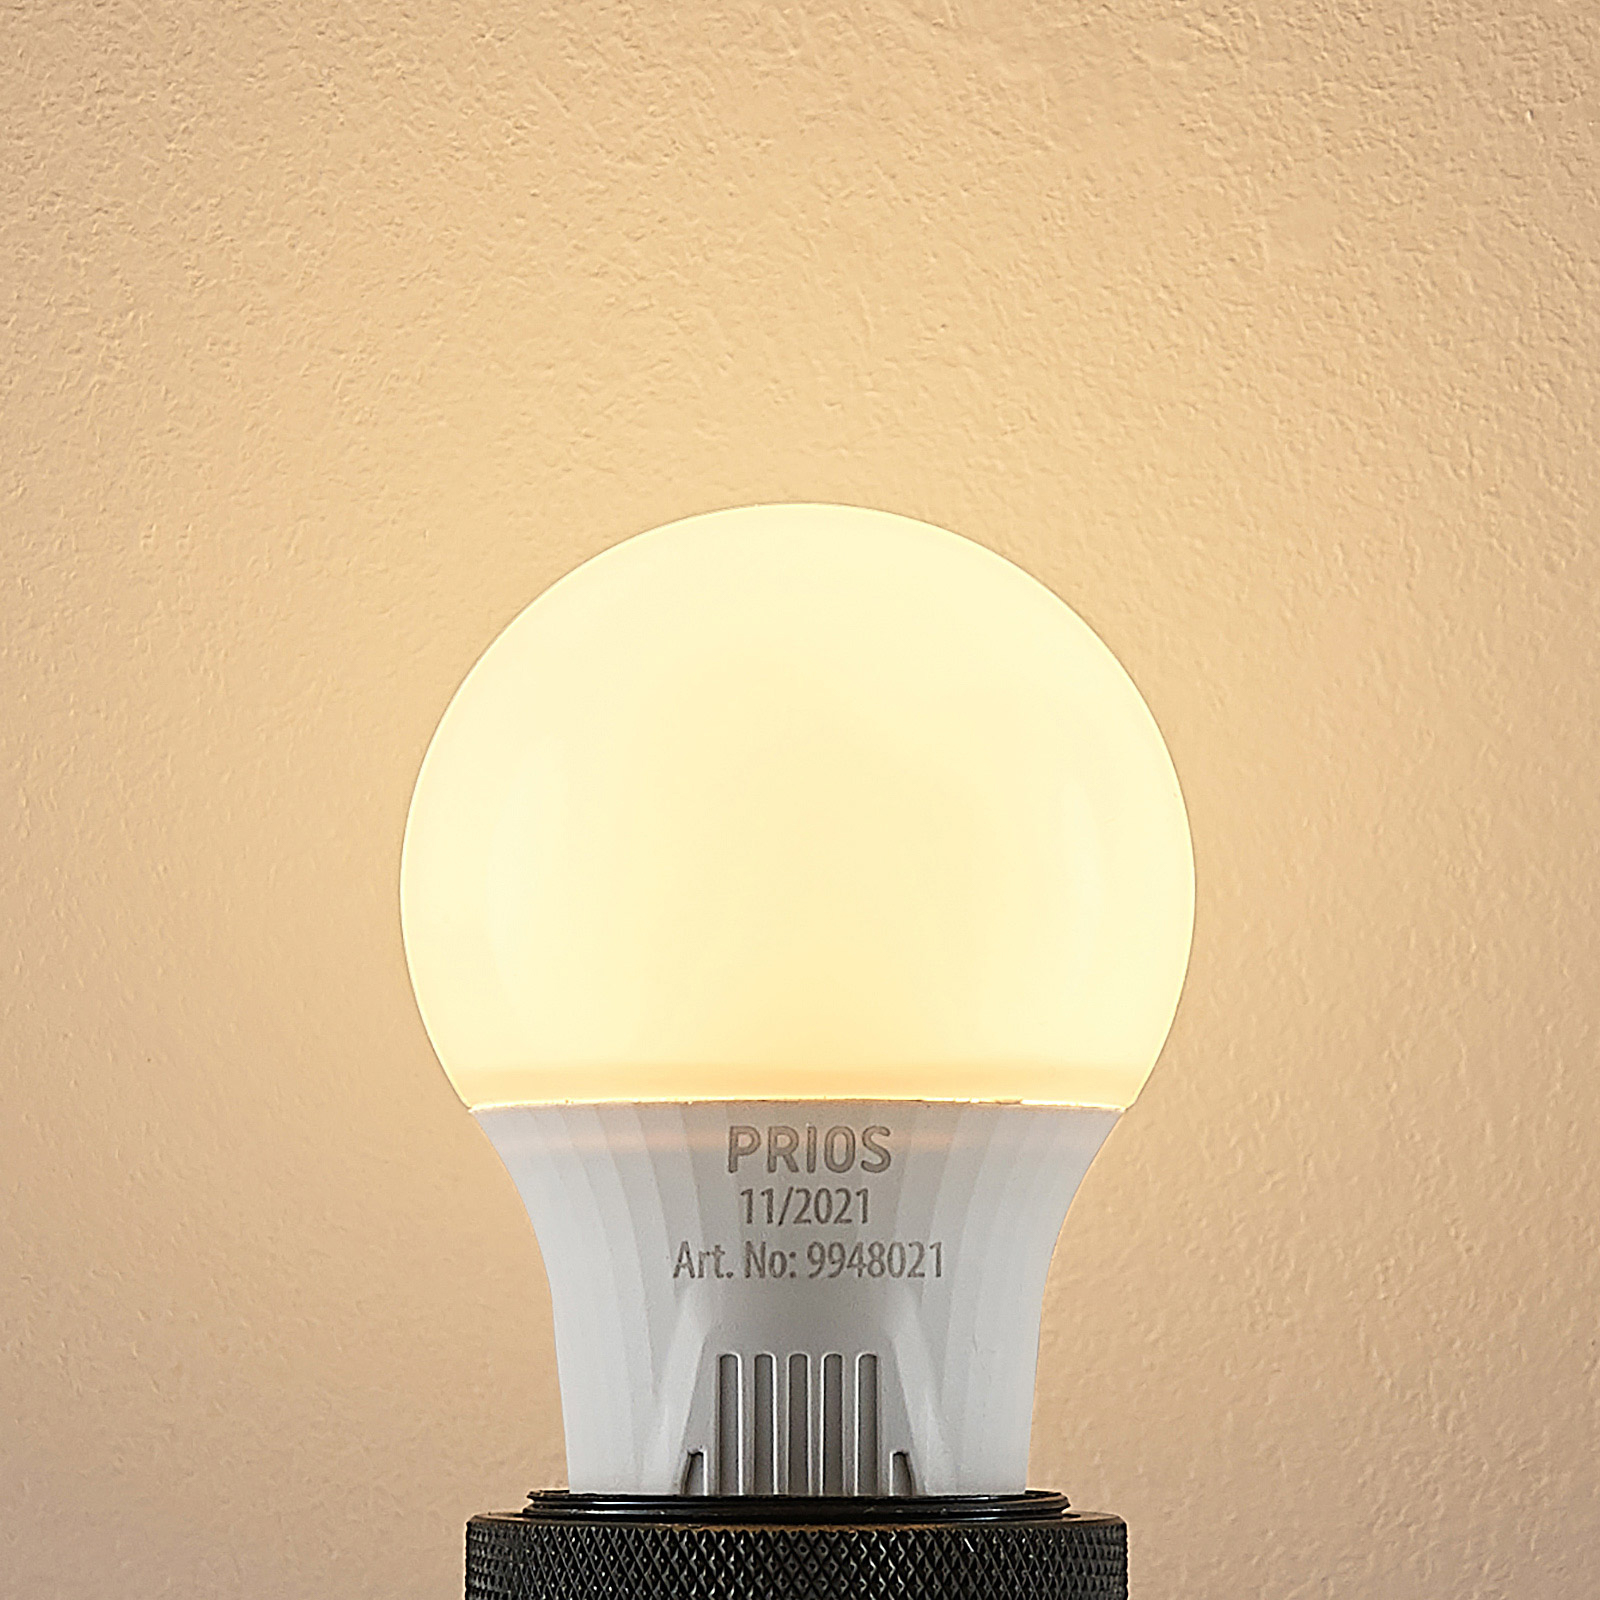 Ampoule LED E27 A60 7 W blanche 2 700 K